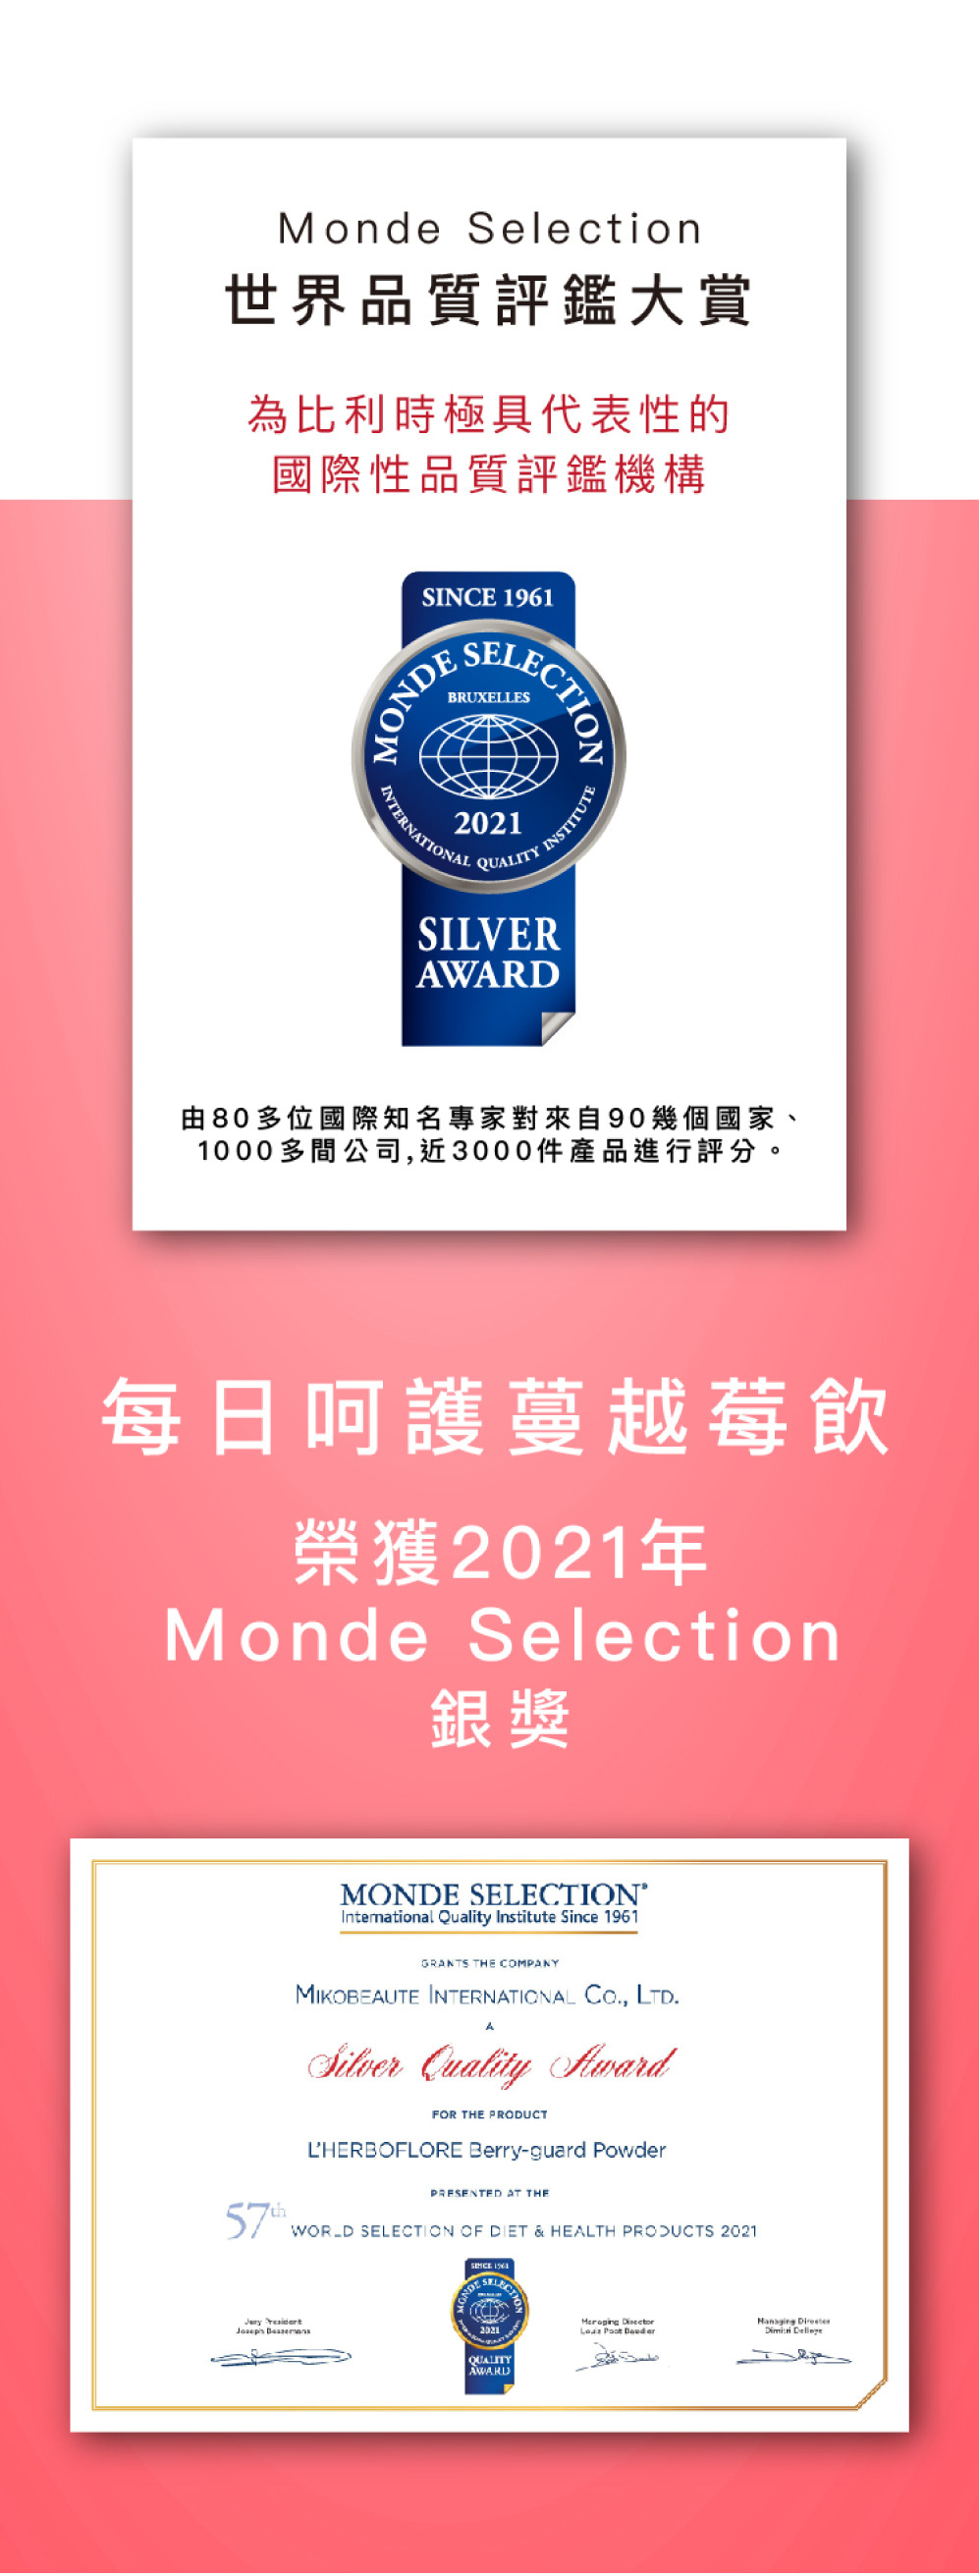 2021年Monde Selection銀獎